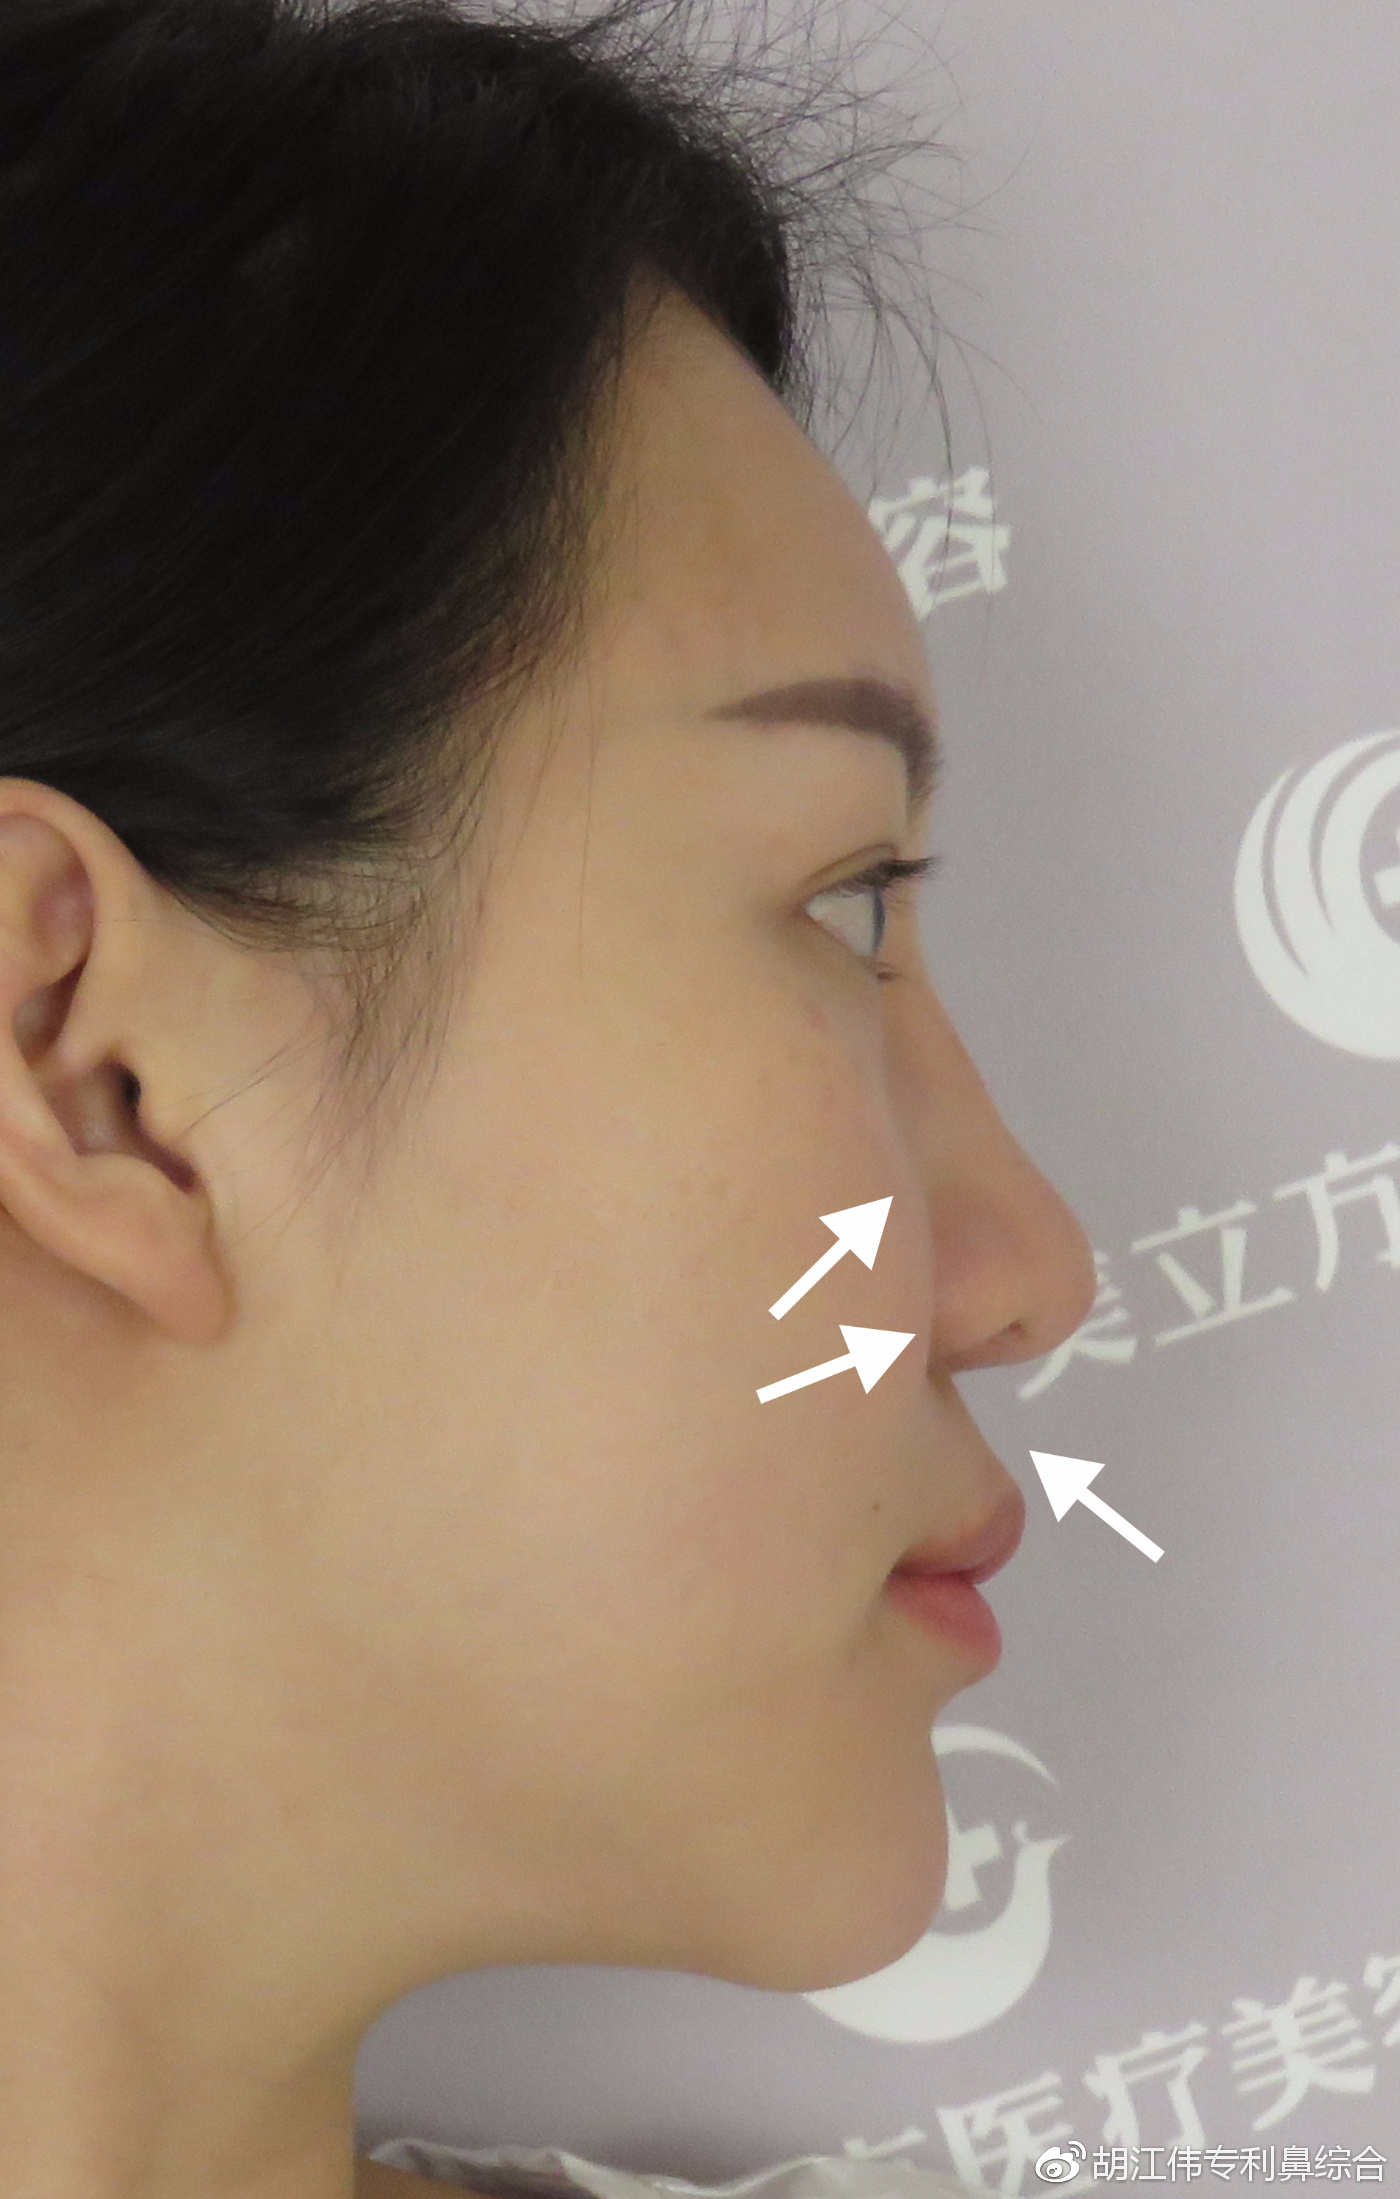 鼻基底凹陷和面中部凹陷的区别在哪里？ - 知乎